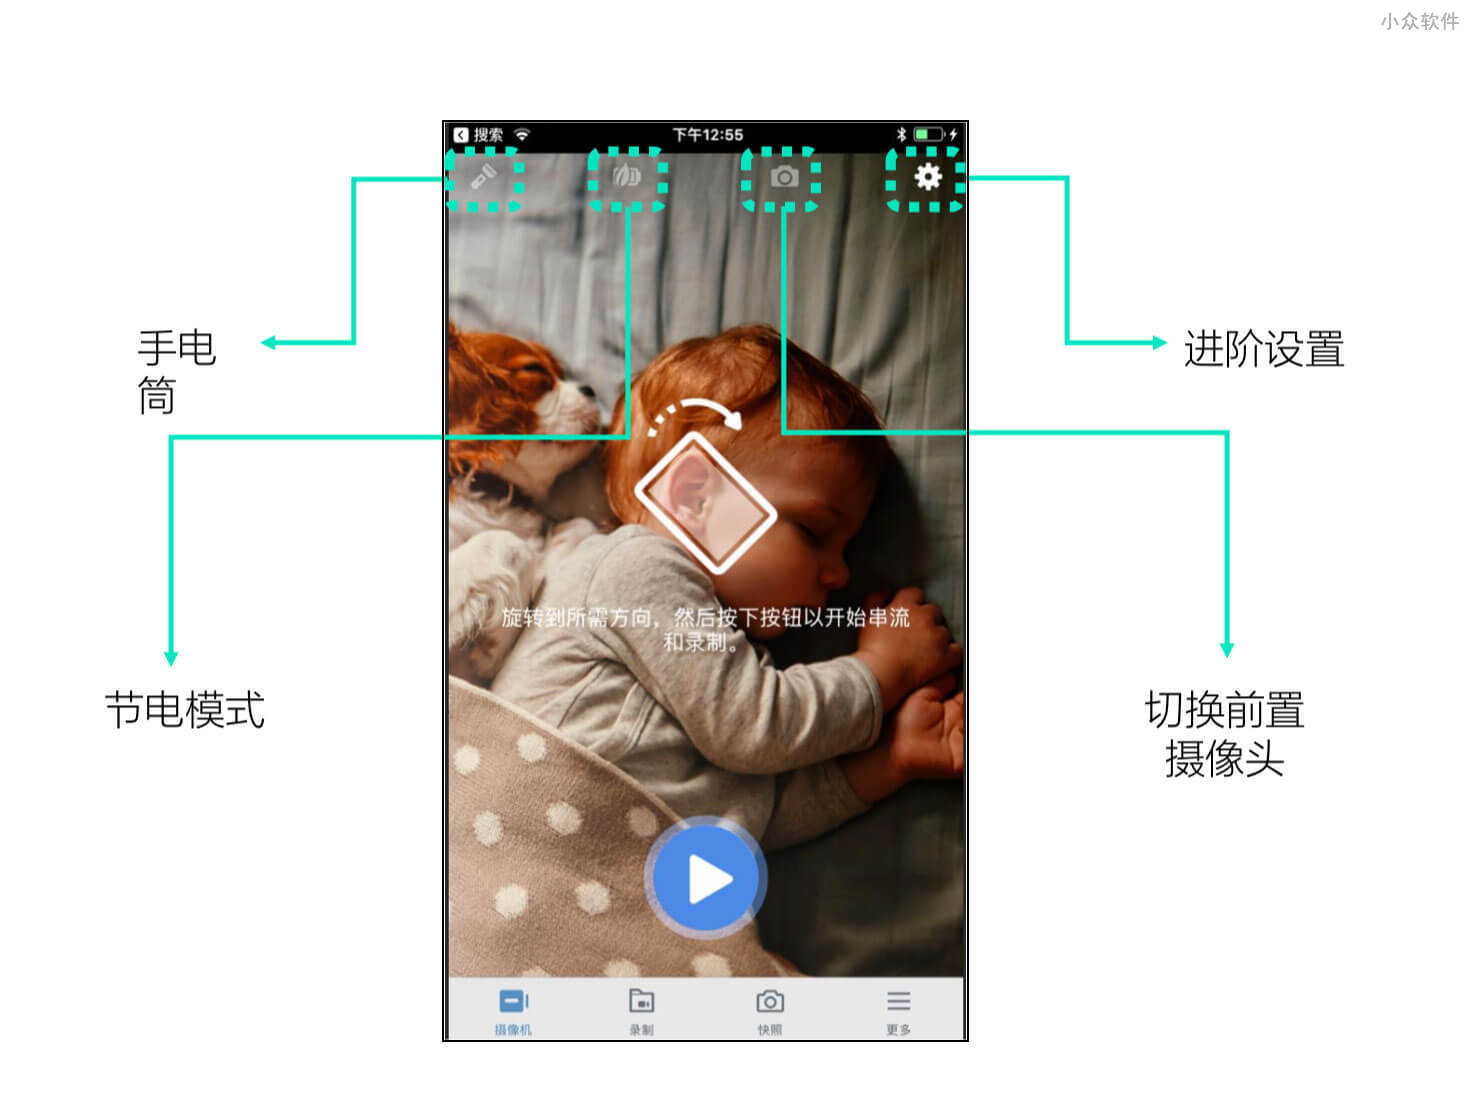 群晖 LiveCam - 用手机做监控摄像头，实时保存录像至 NAS 中储存 4